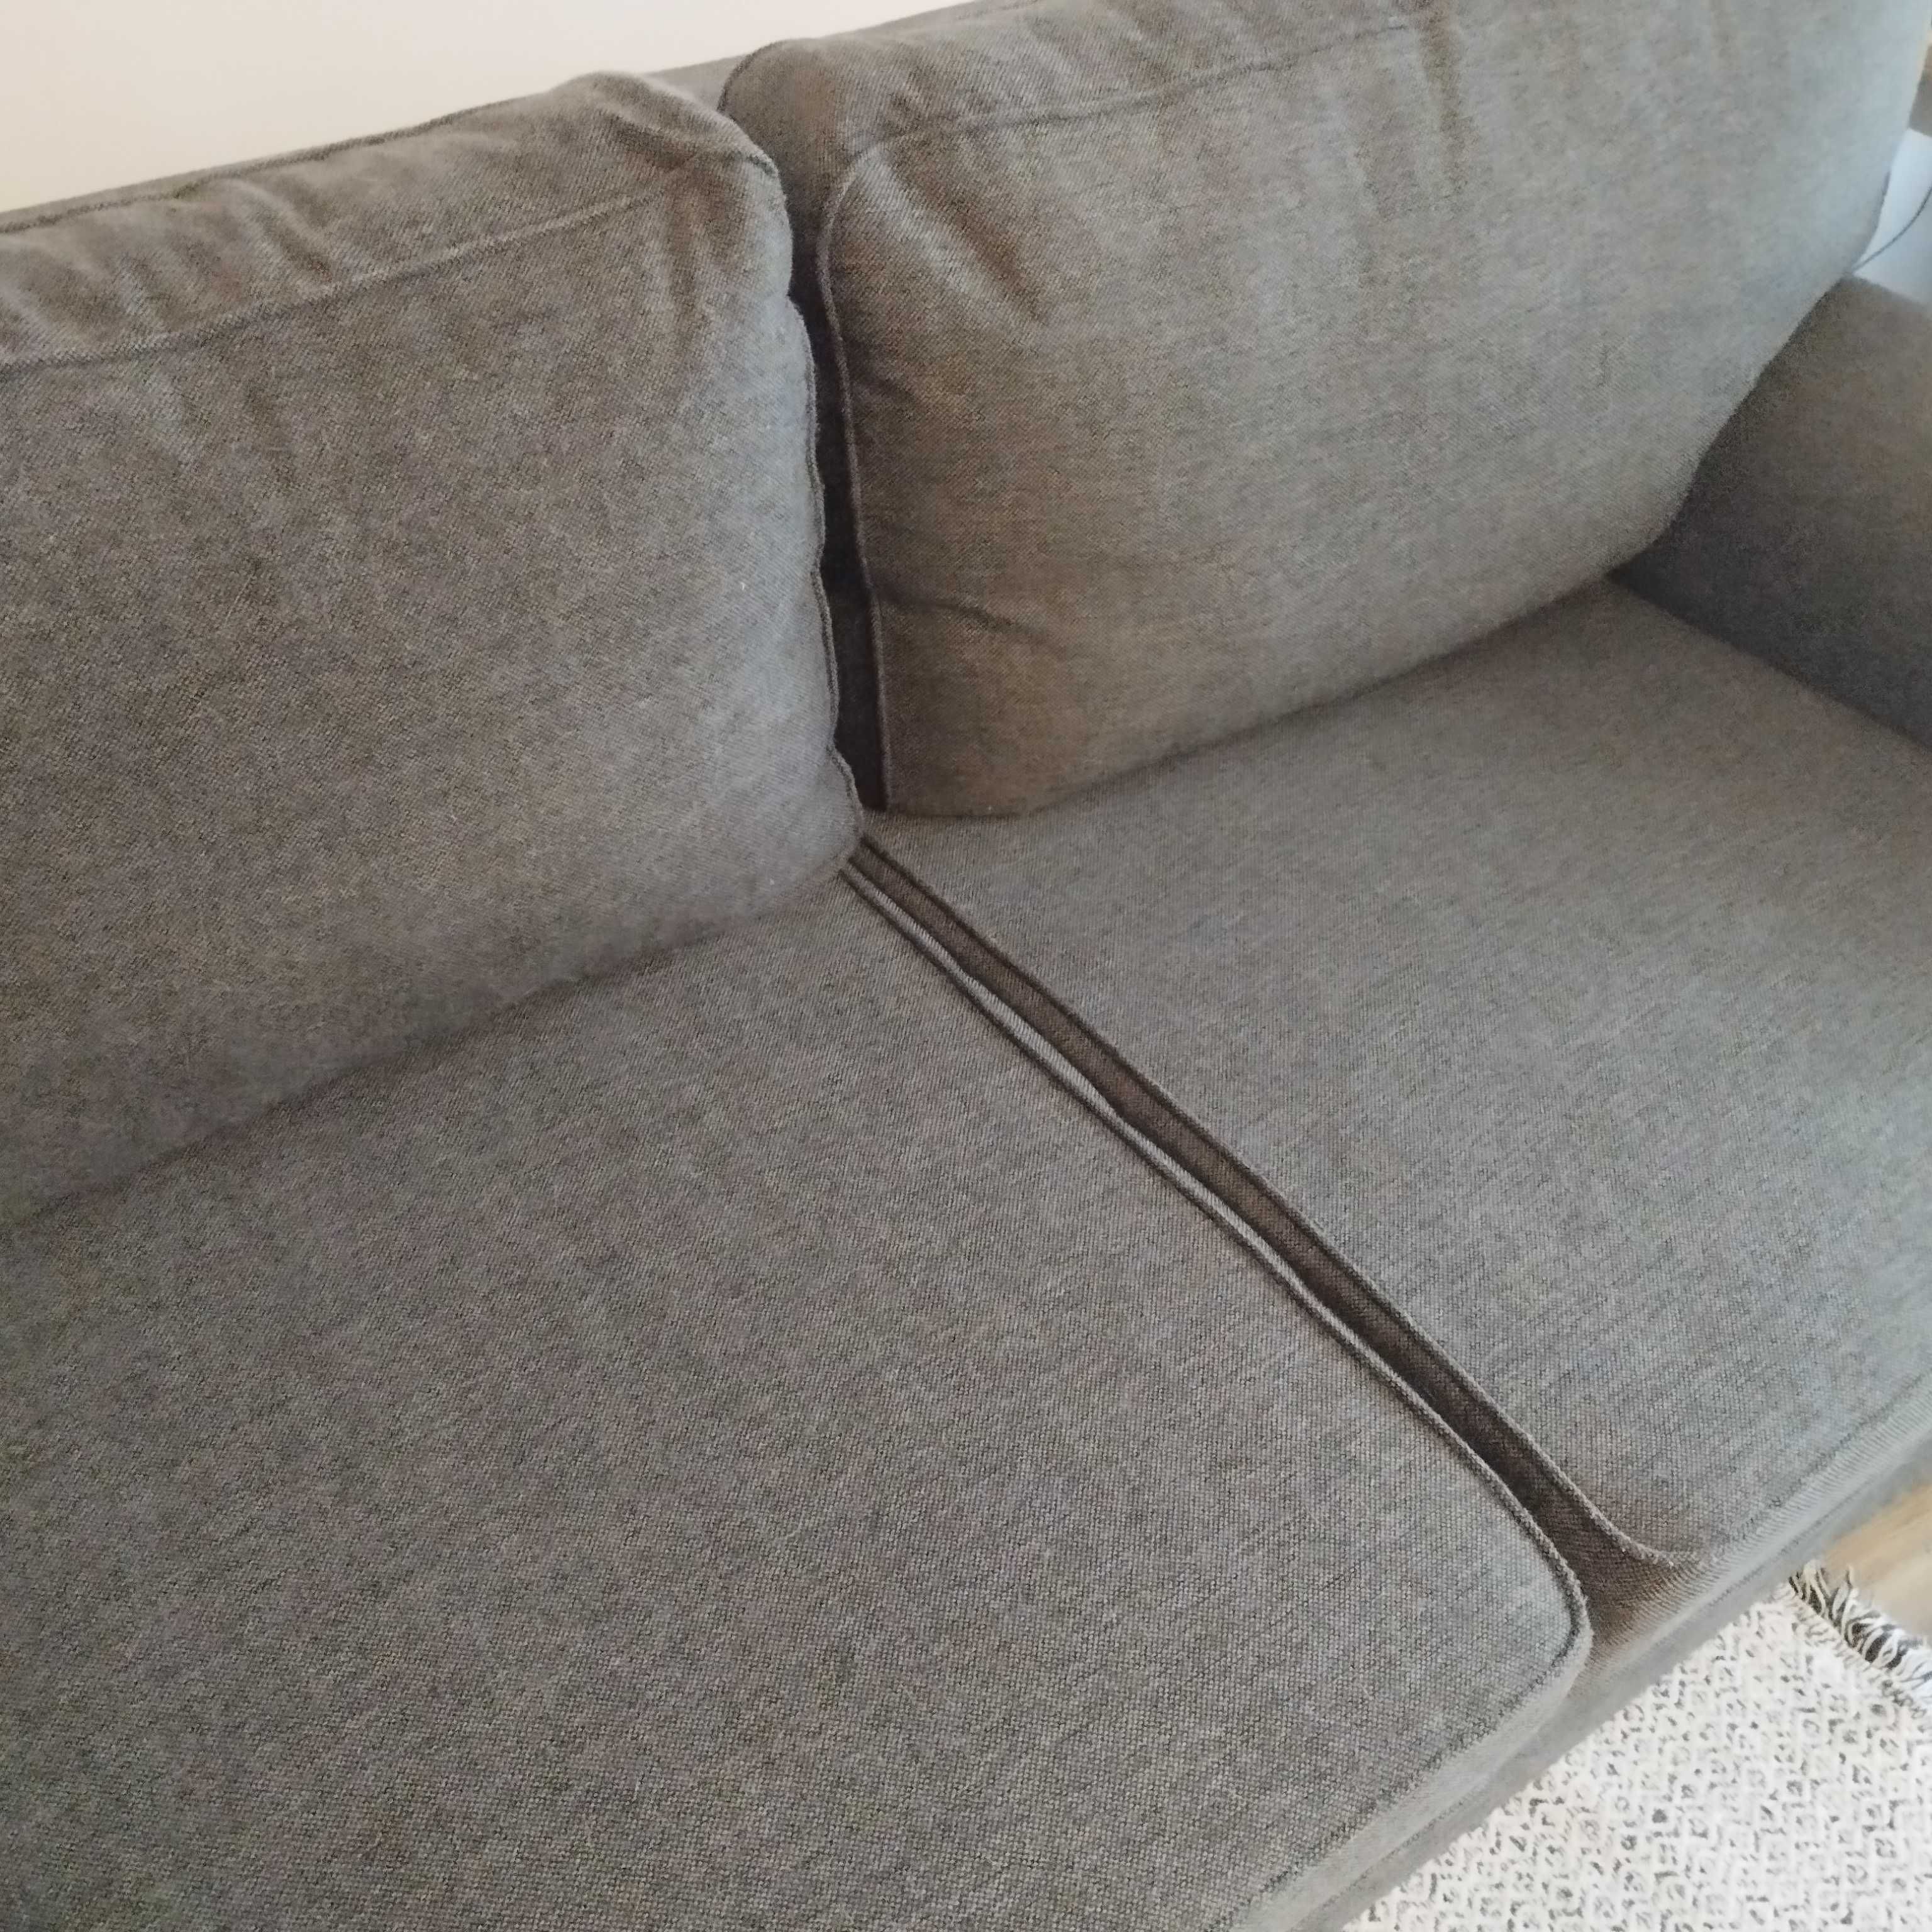 Ekstra wygodna: EVERTSBERG IKEA Rozkładana sofa, z pojemnikiem